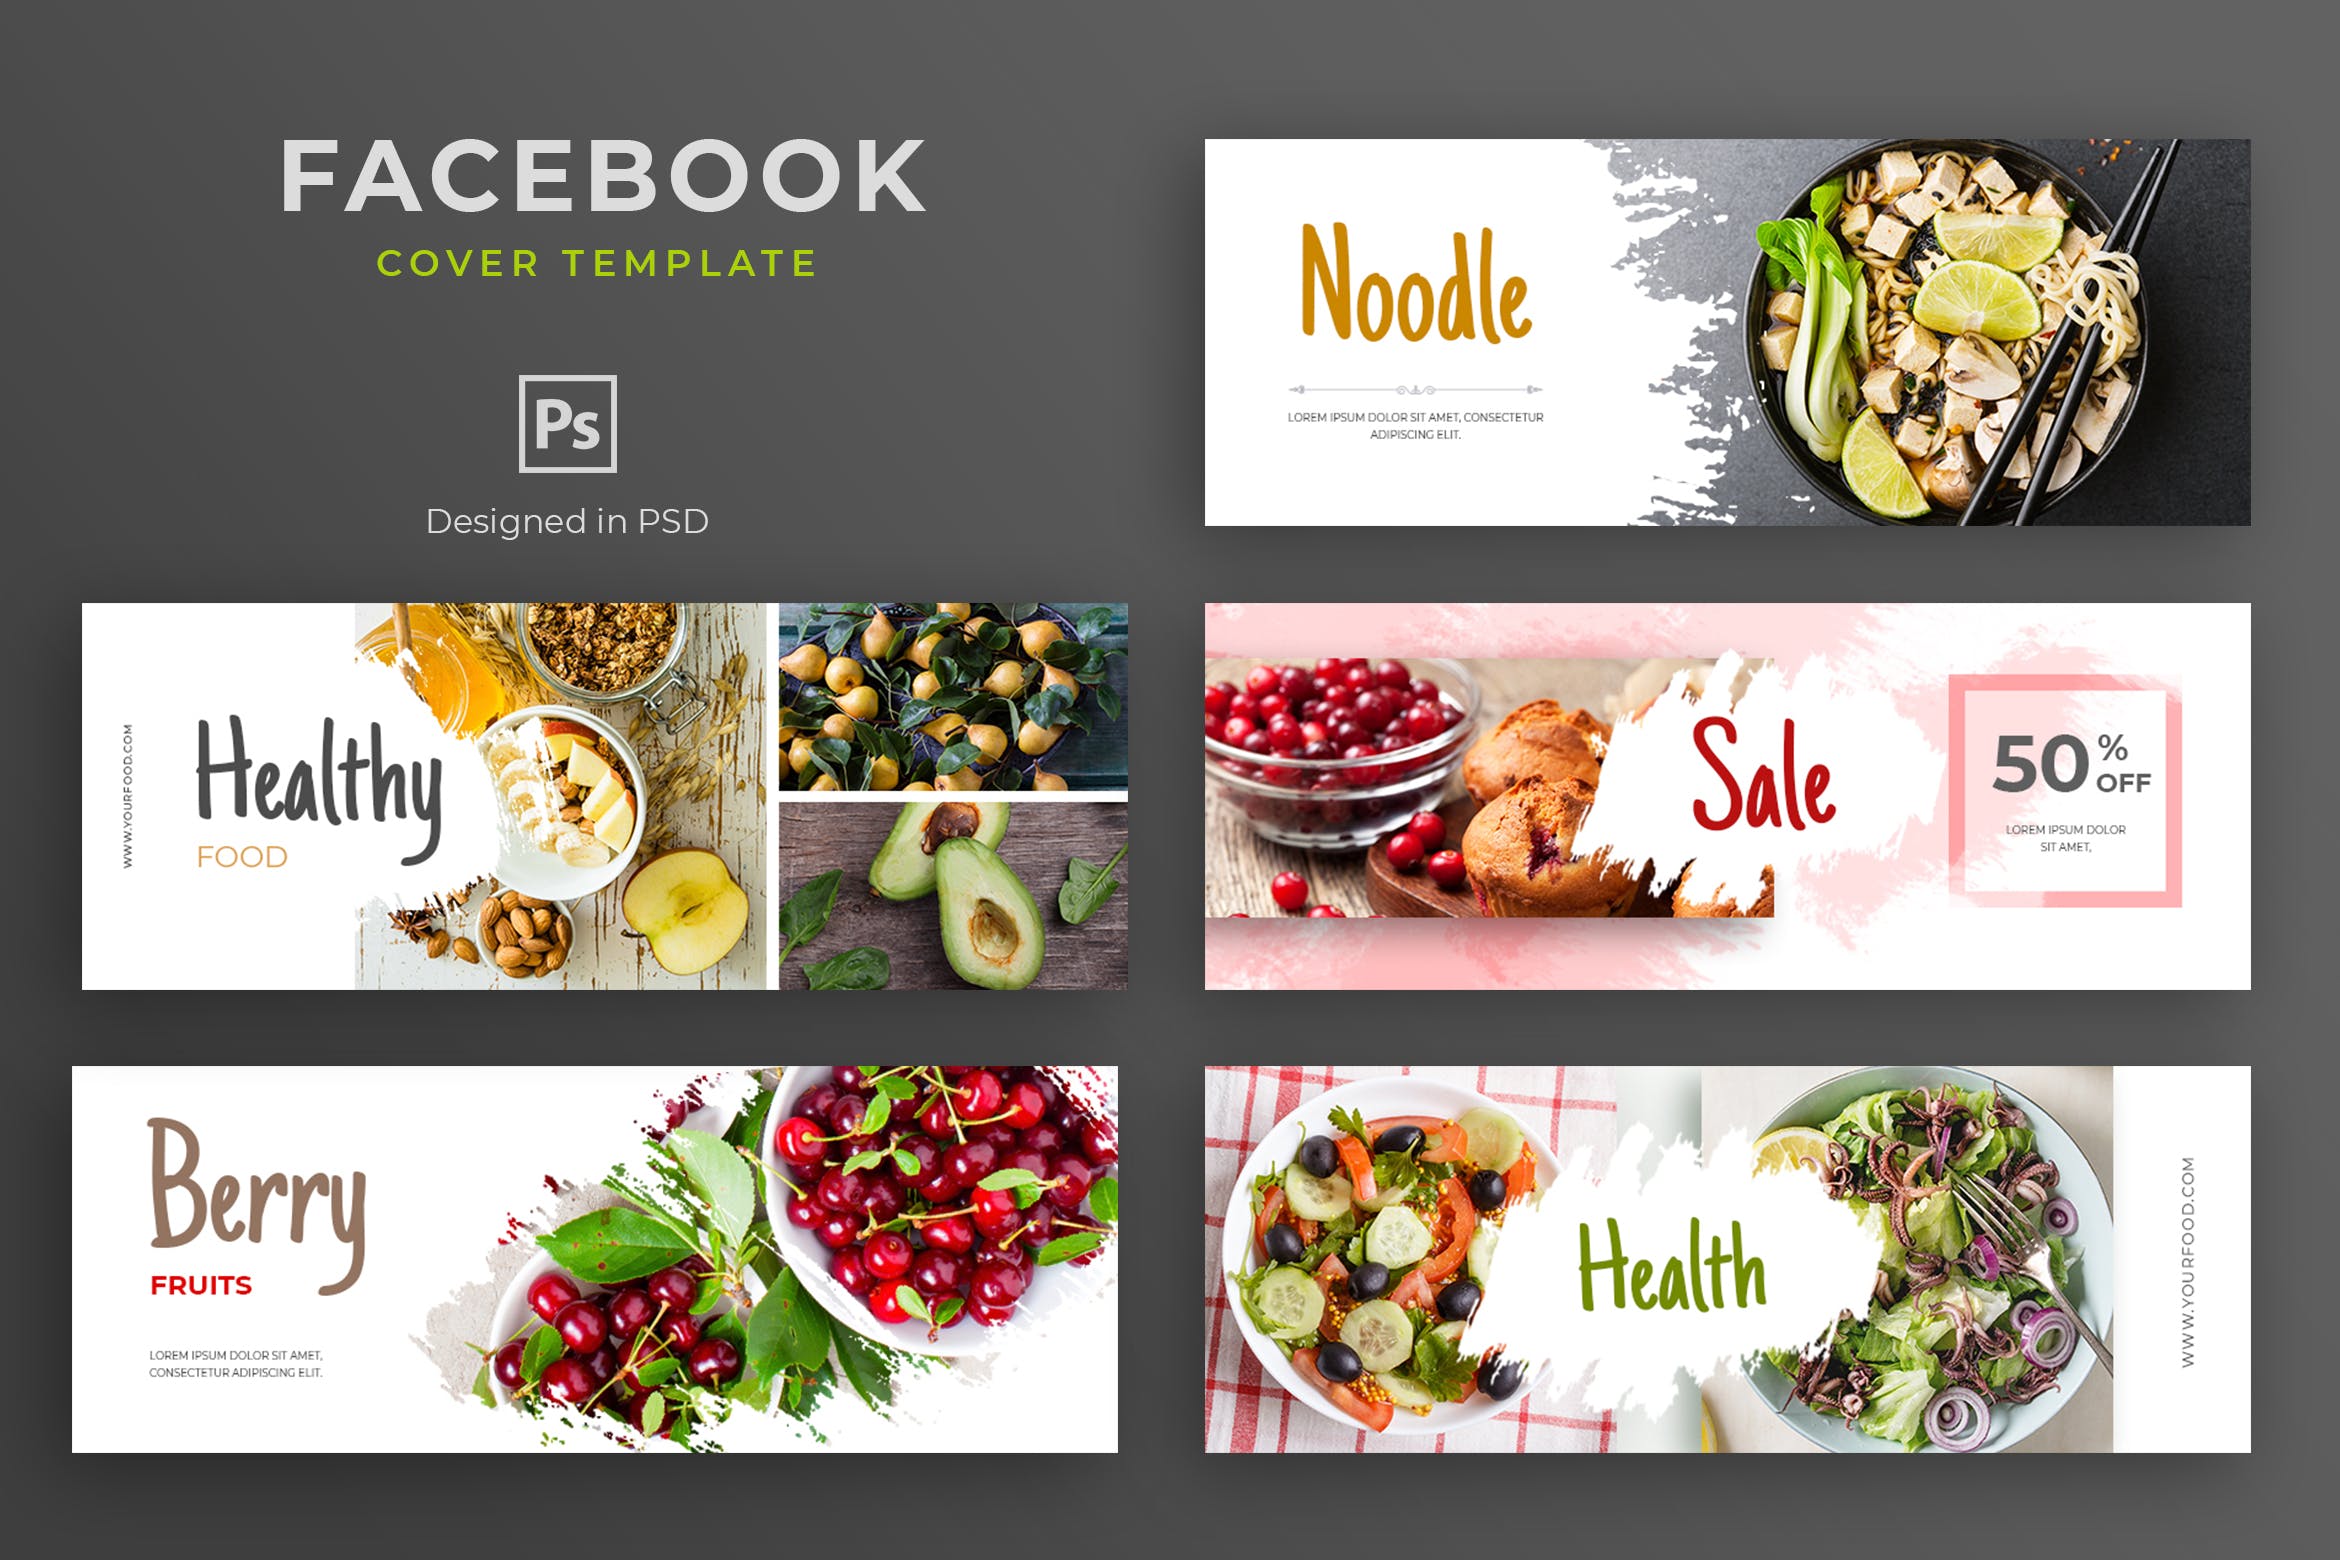 健康食物品牌推广Facebook主页封面设计模板非凡图库精选 Healthy Food Facebook Cover Template插图